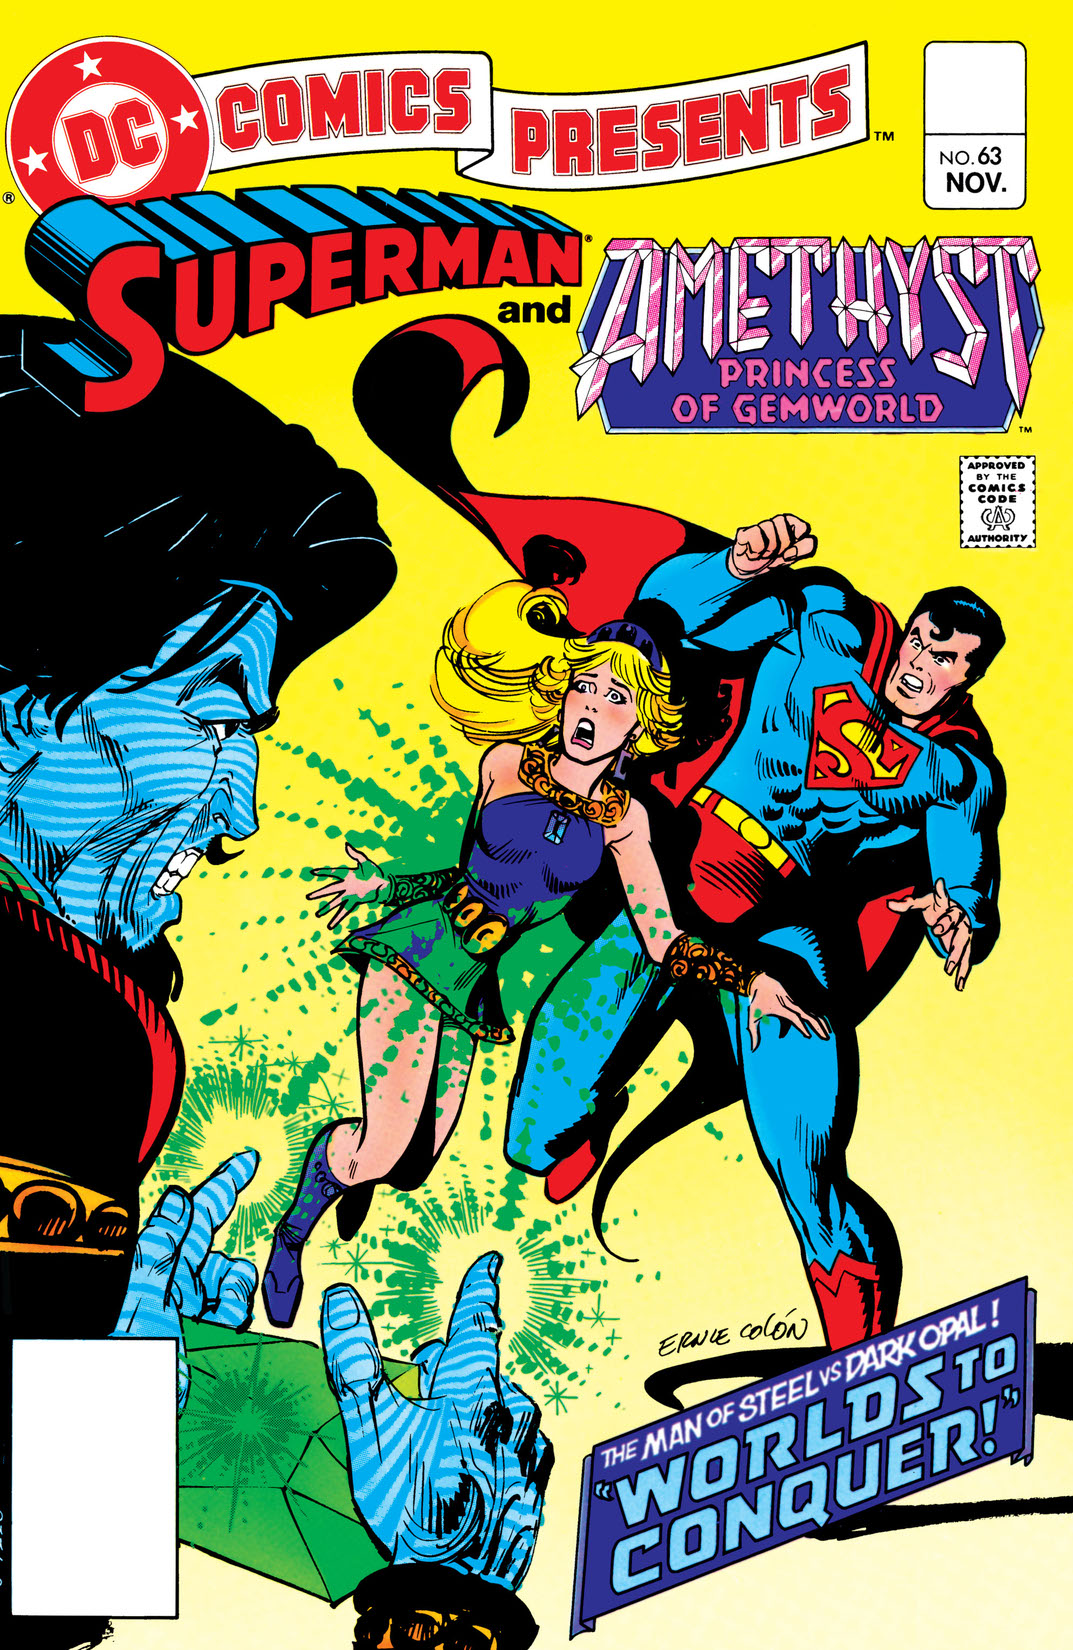 DC Comics Presents (1978-1986) #63 preview images